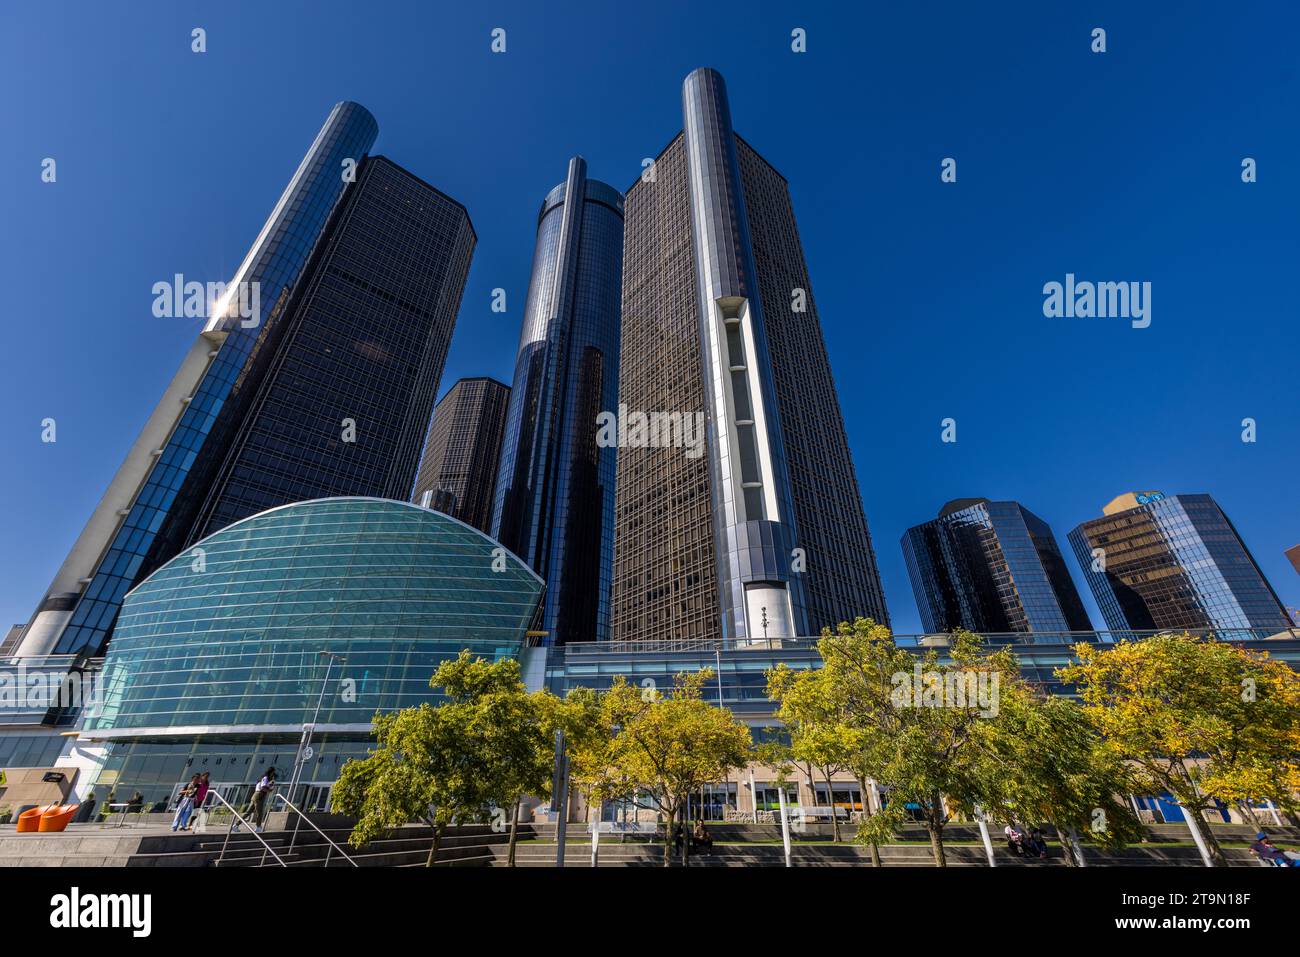 Das Renaissance Center, kurz „RenCen“ genannt, ist mit 221 Metern das höchste Gebäude in Detroit. Hier befindet sich der globale Hauptsitz von General Motors. Der Komplex aus fünf Türmen steht direkt am Detroit River und bietet einen Blick auf Windsor (Ontario), Kanadas südlichste Stadt gegenüber. Hart Plaza und Renaissance Center in Detroit, USA Stockfoto